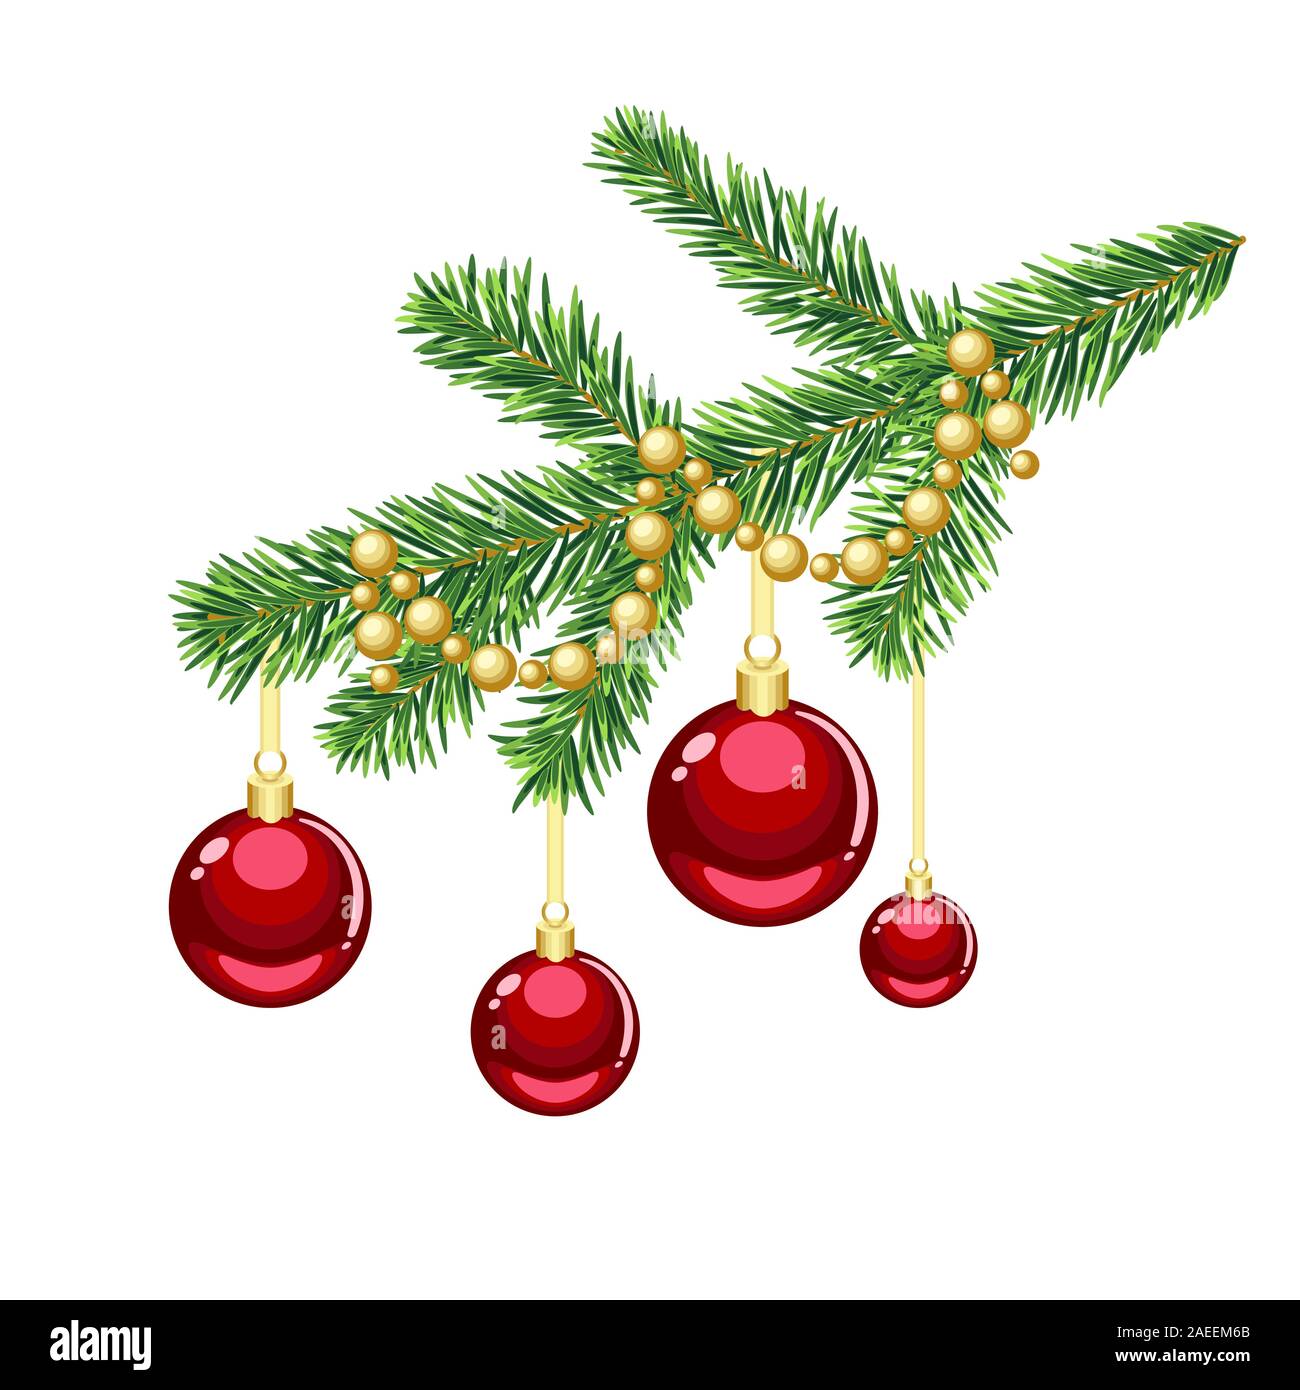 Weihnachten fir tree branch Einrichtung mit goldenen Perlen und roten Ornamenten isoliert auf weißem Stock Vektor